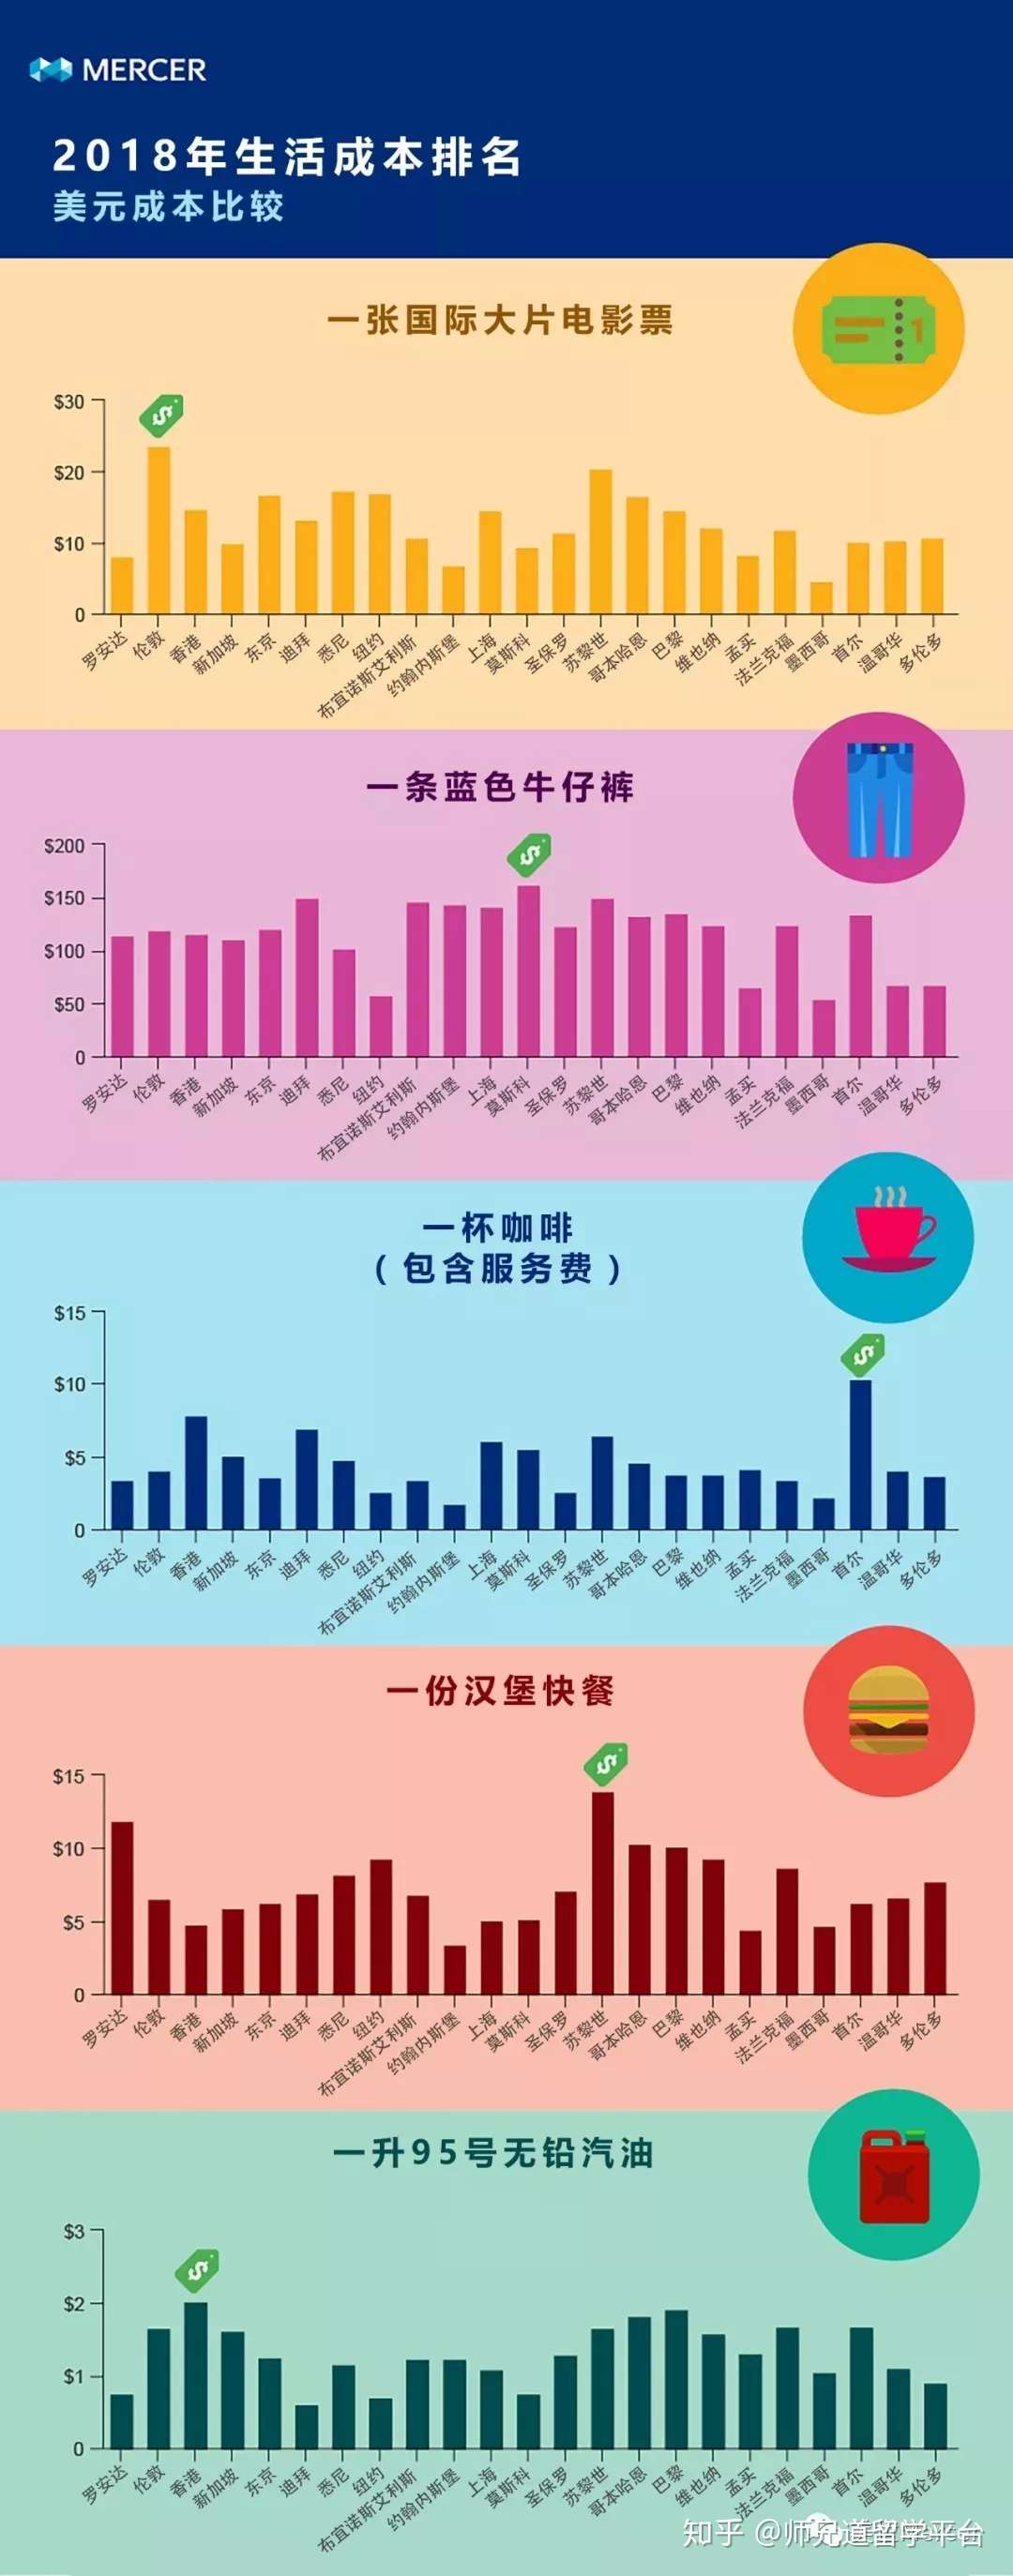 香港留学 18全球城市生活成本排名公布 香港排第一 知乎